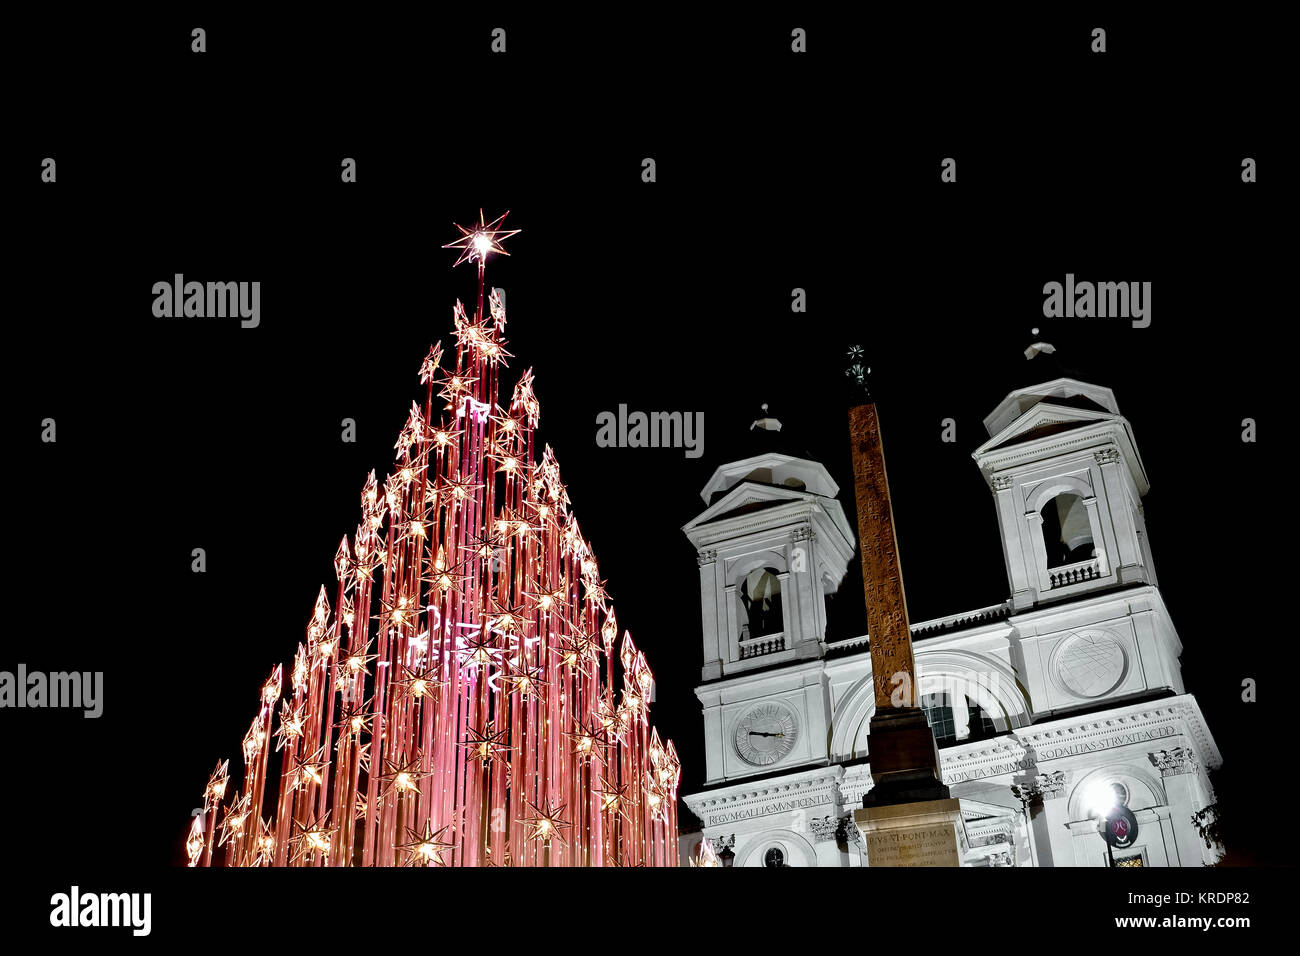 Roma Natale luci led tree, alla Scalinata di piazza di Spagna, Trinità dei Monti, Piazza di Spagna di notte. L'Italia, l'Europa. Il tempo di Natale, Natale umore, l'inverno. Foto Stock